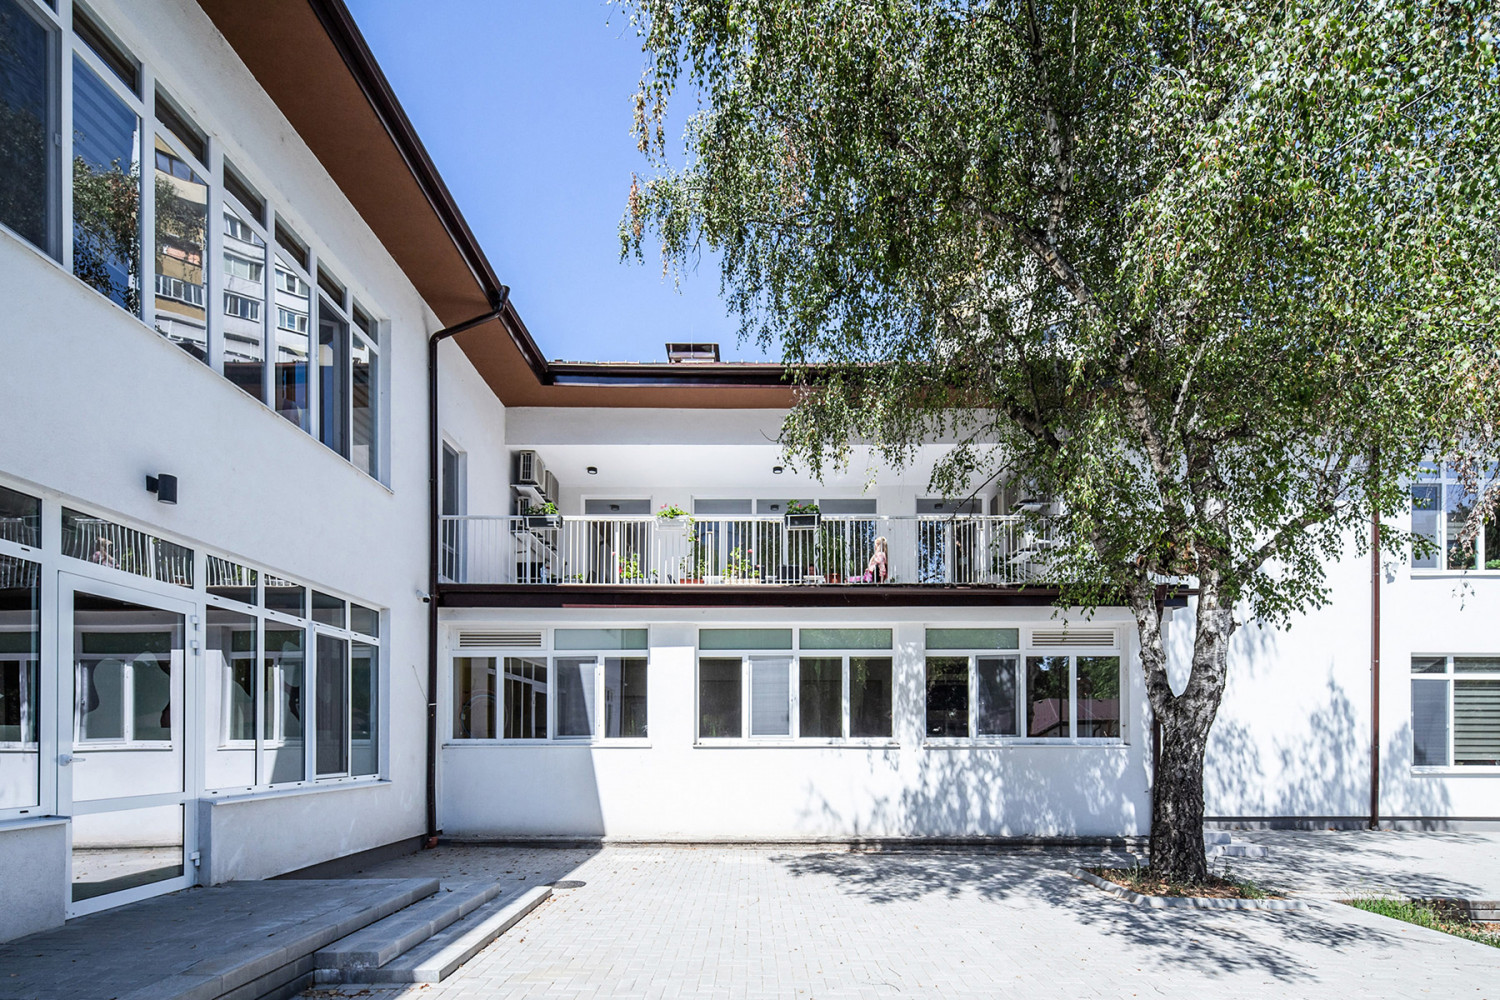 Saint Sofia Children's Development Complex